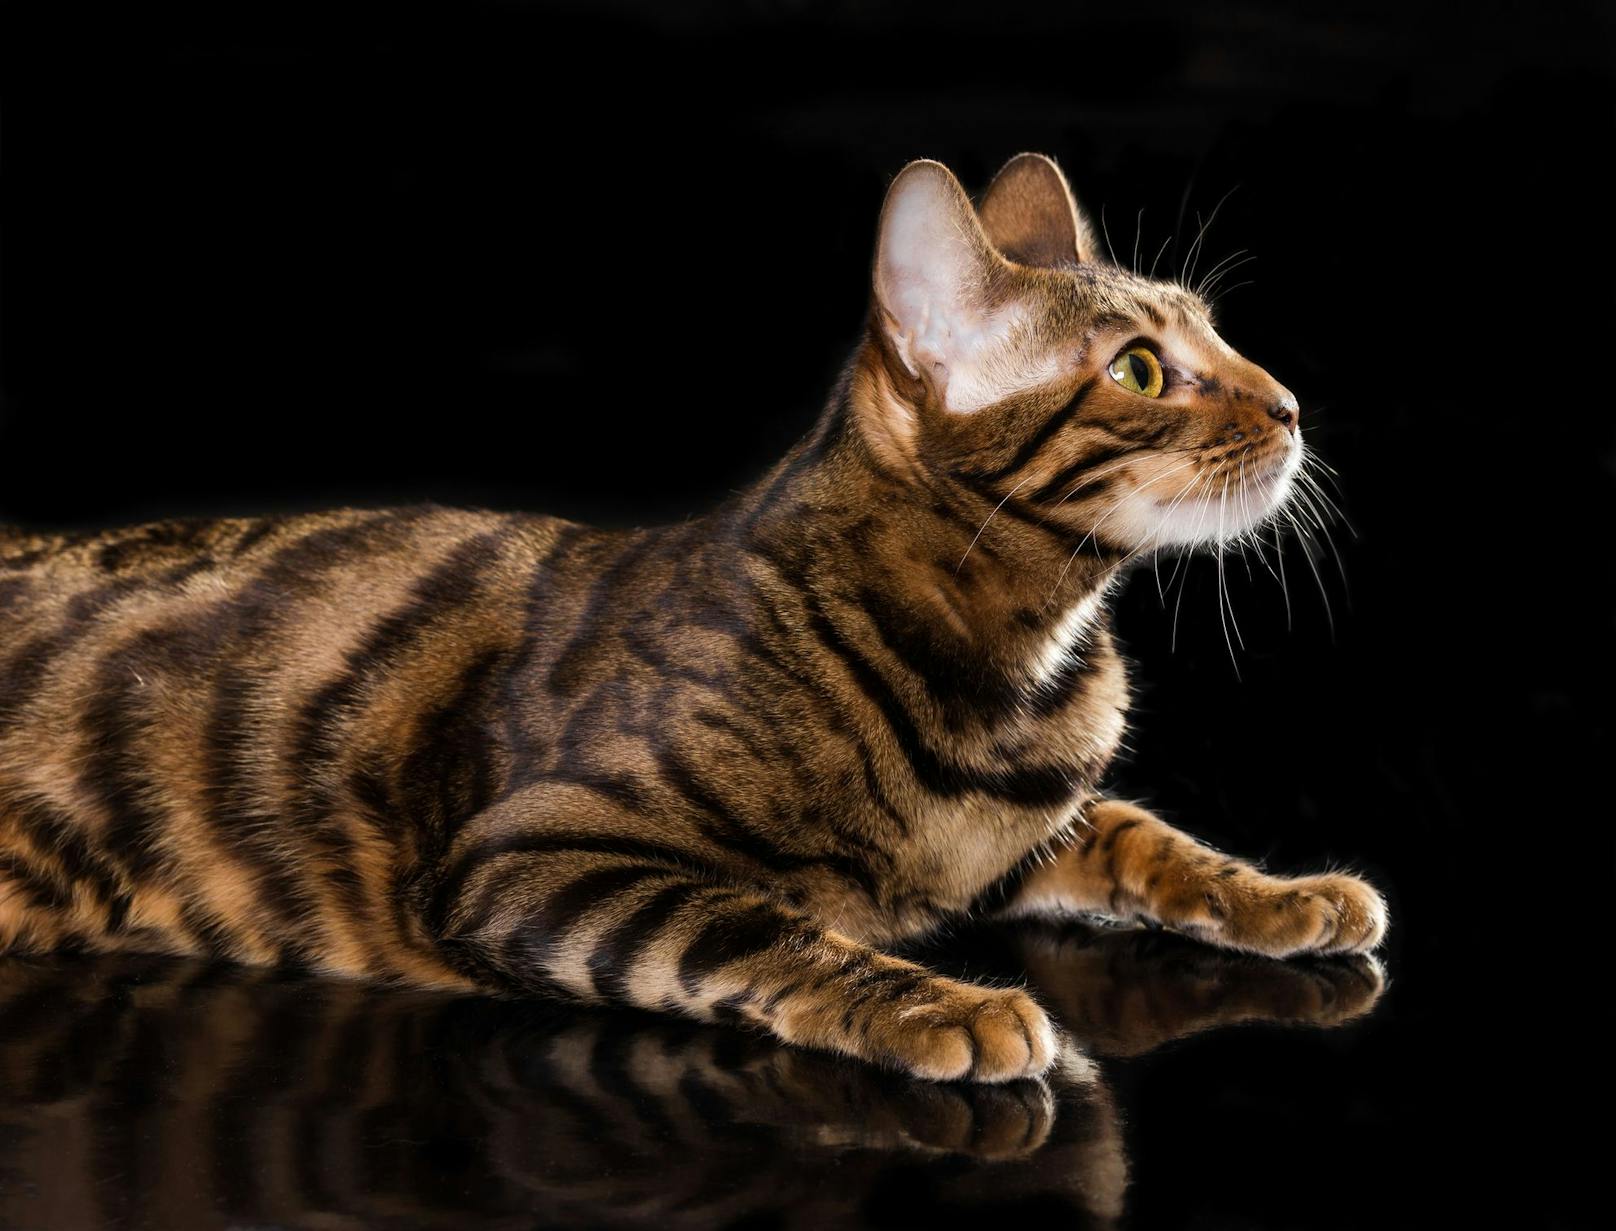 Das Zuchtziel war, eine Hauskatze mit dem optischen Tiger-Look zu erhalten. 